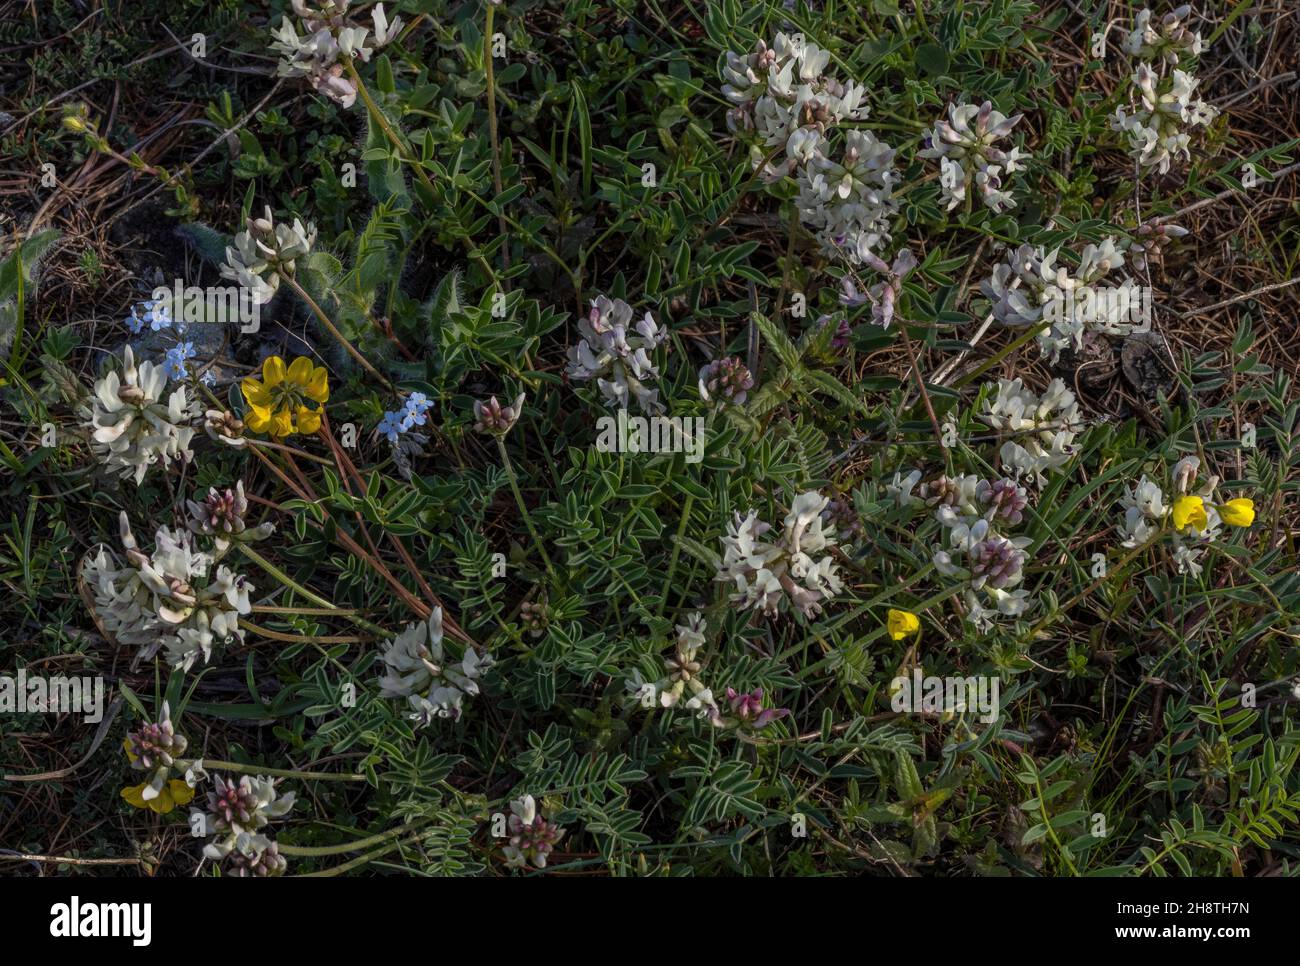 Alpine milk-vetch, Astragalus alpinus, in flower in mountain grassland. Stock Photo